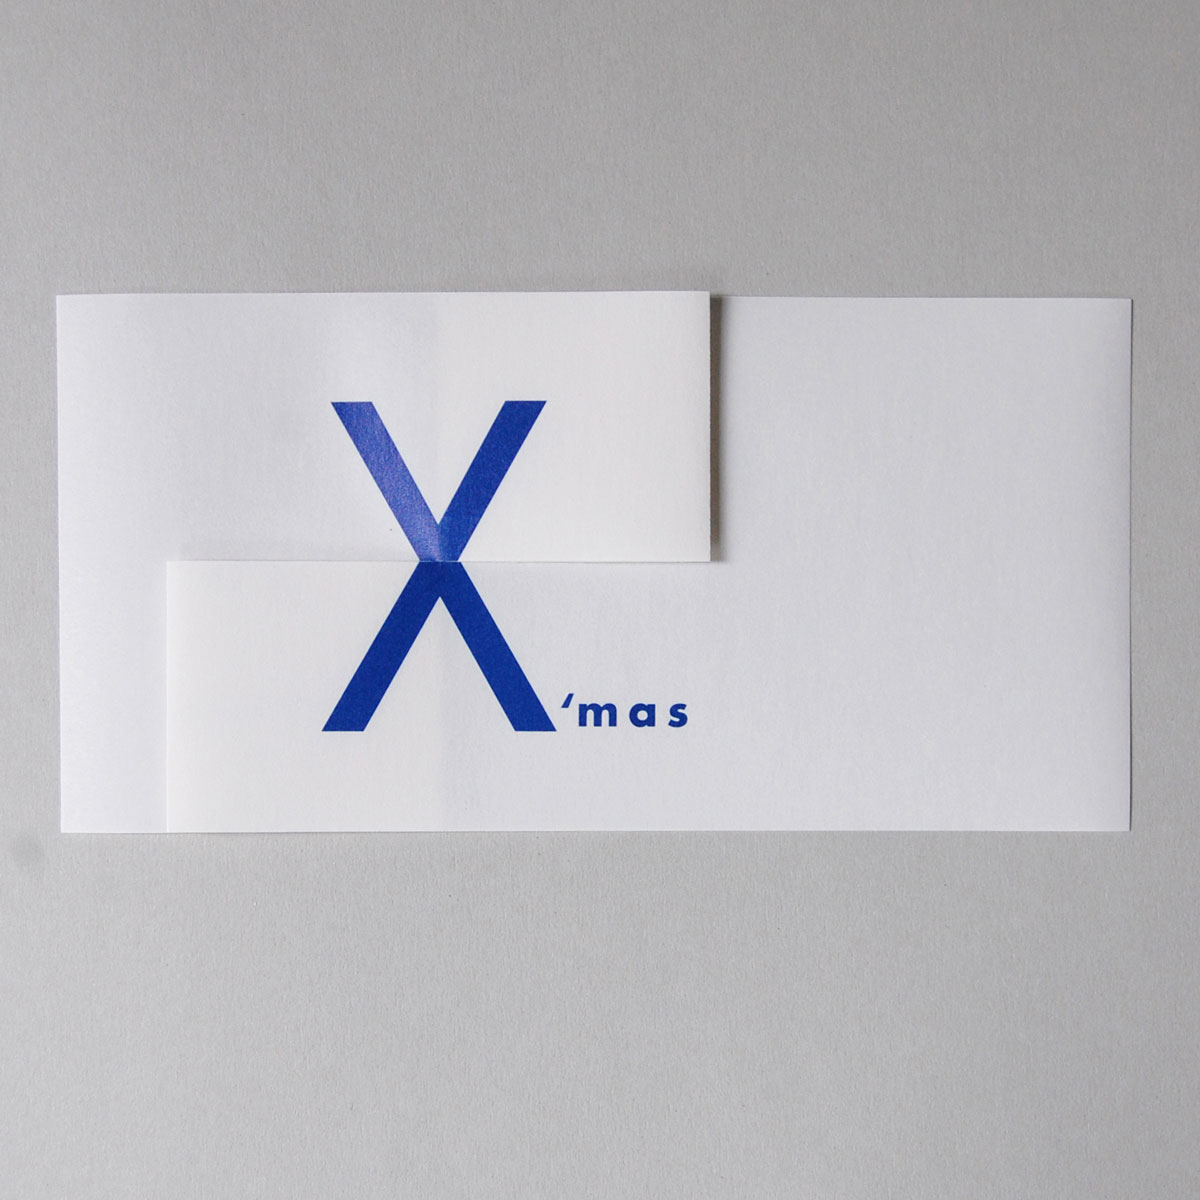 Design-Weihnachtskarten mit Transparentpapier: merrY Xmas, blauer Druck